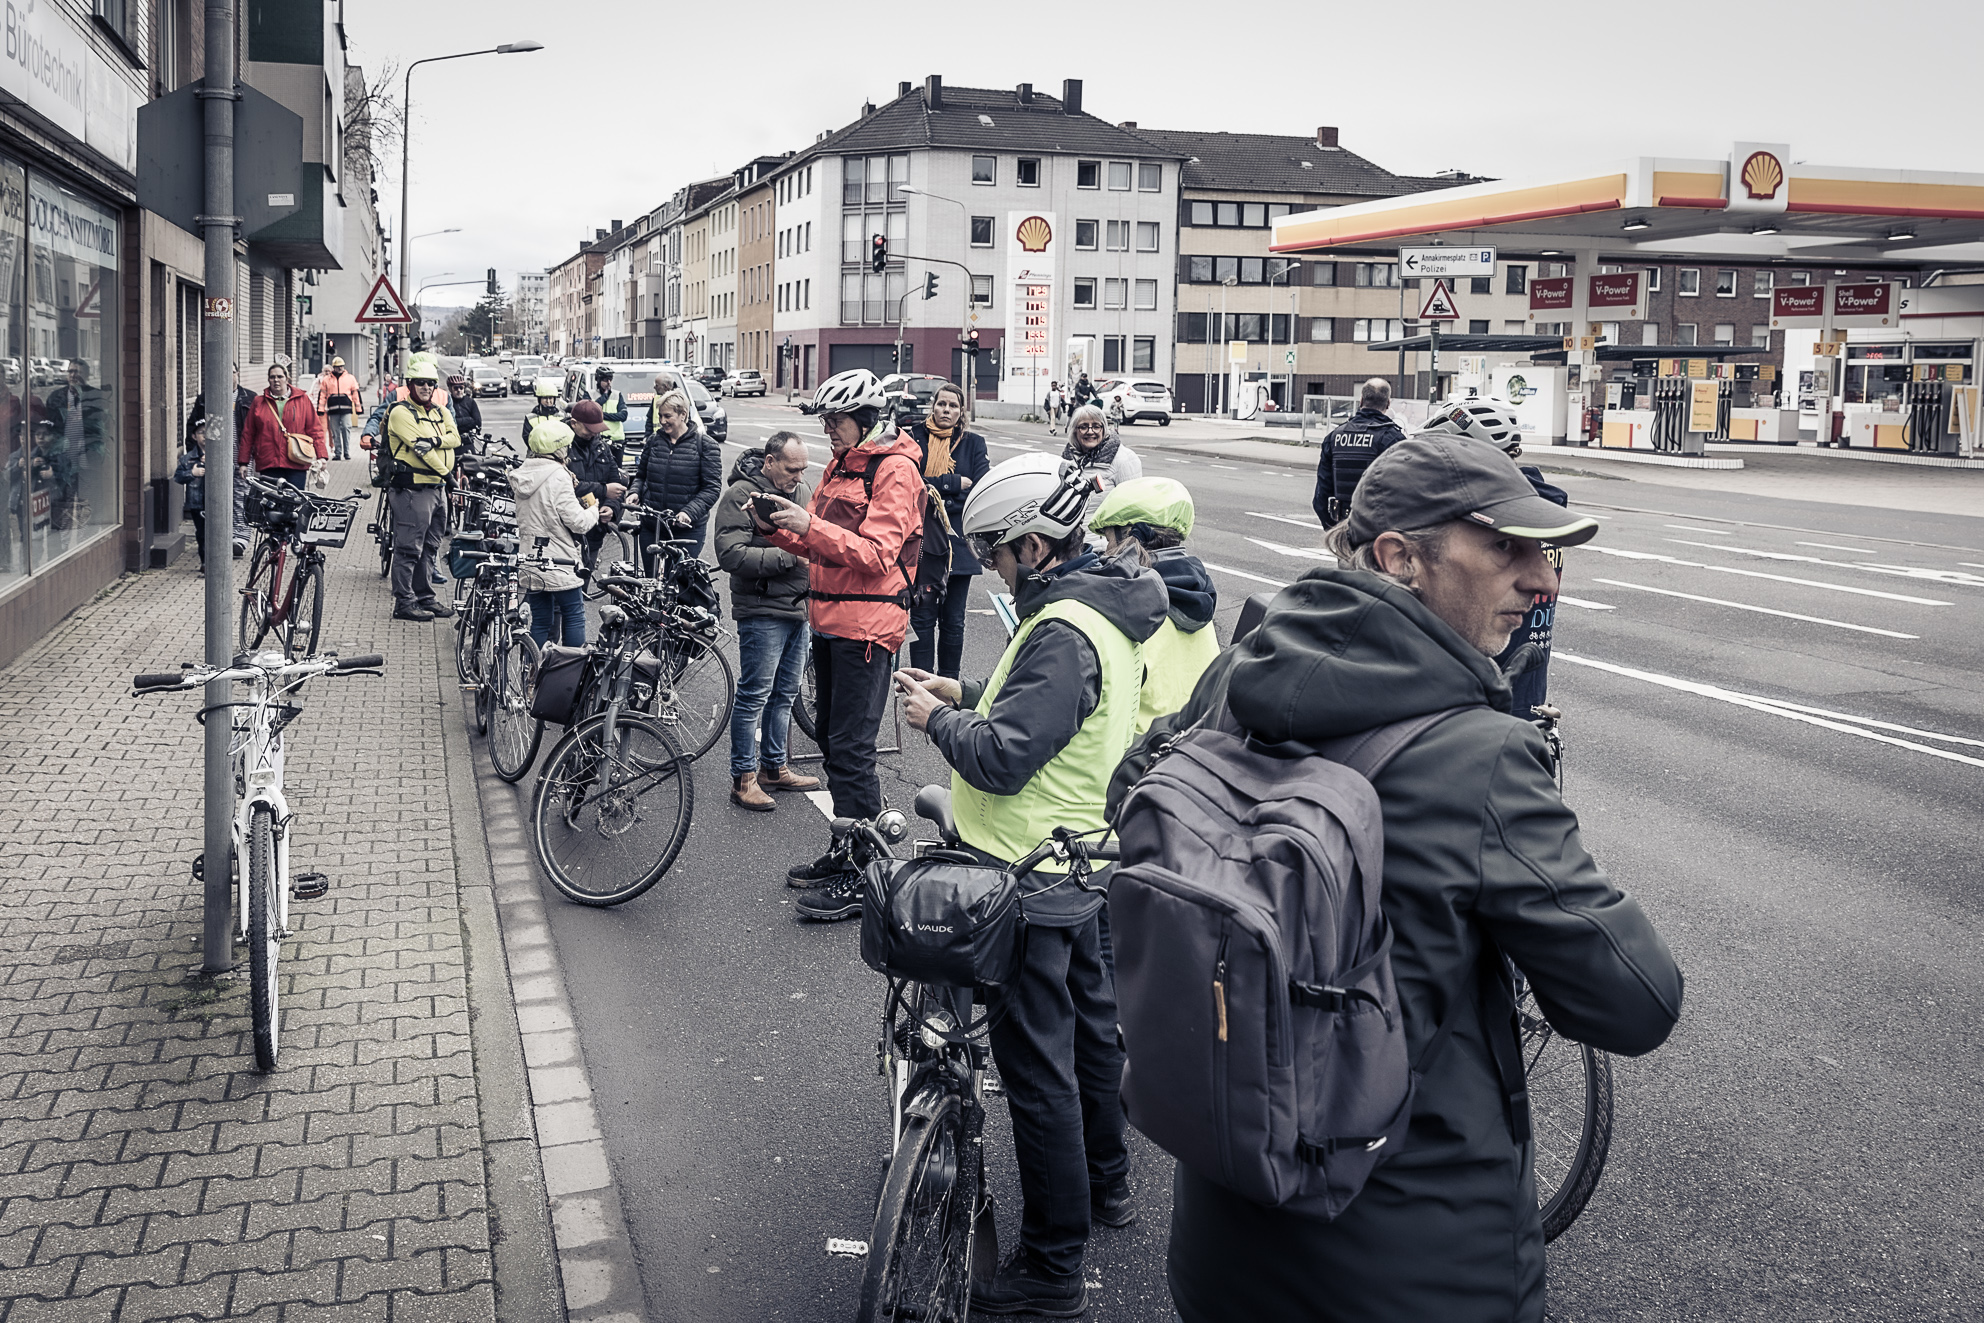 Radfahrer auf der Aaqchener Straße, bei der Aufstellung eines weißen Fahrrades